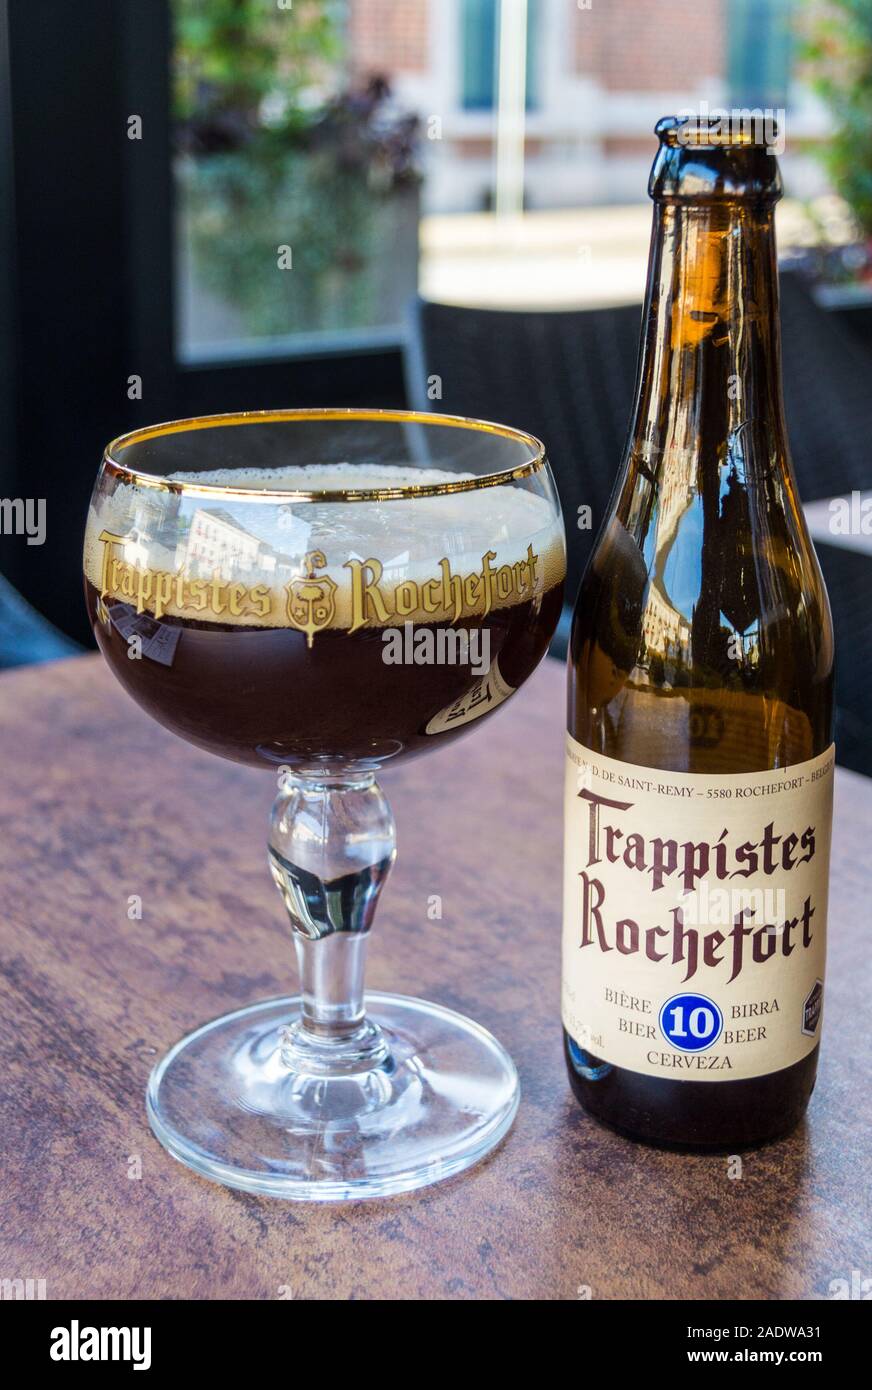 Un verre et une bouteille de bière trappiste Rochefort 10, le  bar-restaurant la Gourmandise, Rochefort, Belgique Photo Stock - Alamy